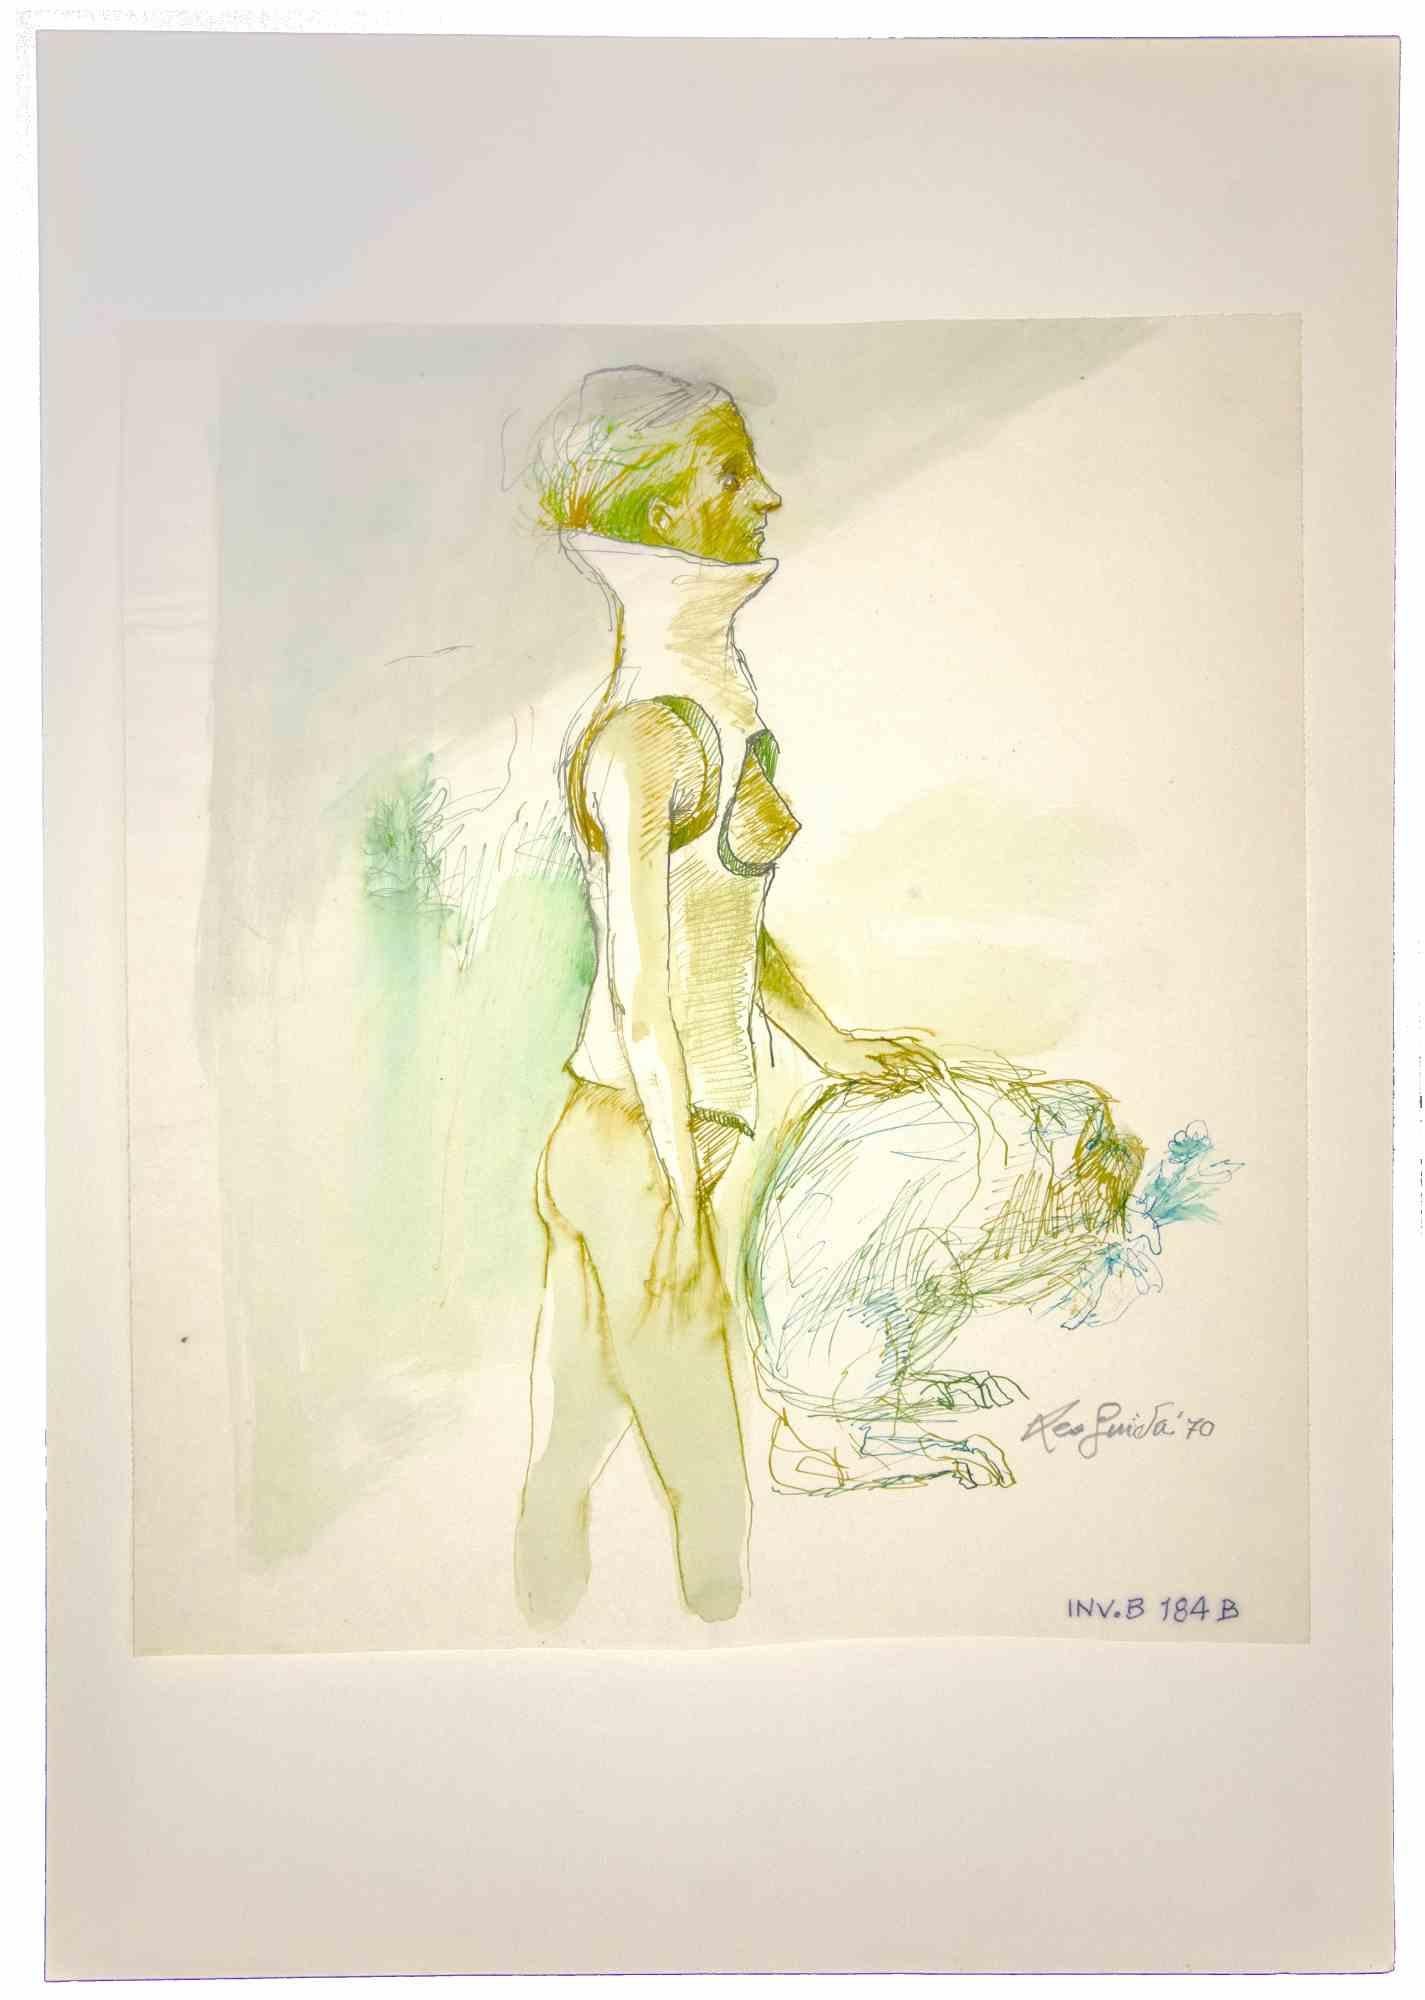 Nude ist ein originales zeitgenössisches Kunstwerk, das in den 1970er Jahren von dem italienischen zeitgenössischen Künstler Leo Guida (1992 - 2017) geschaffen wurde.

Originalzeichnung in Aquarell und Chinatusche auf elfenbeinfarbenem Papier, auf